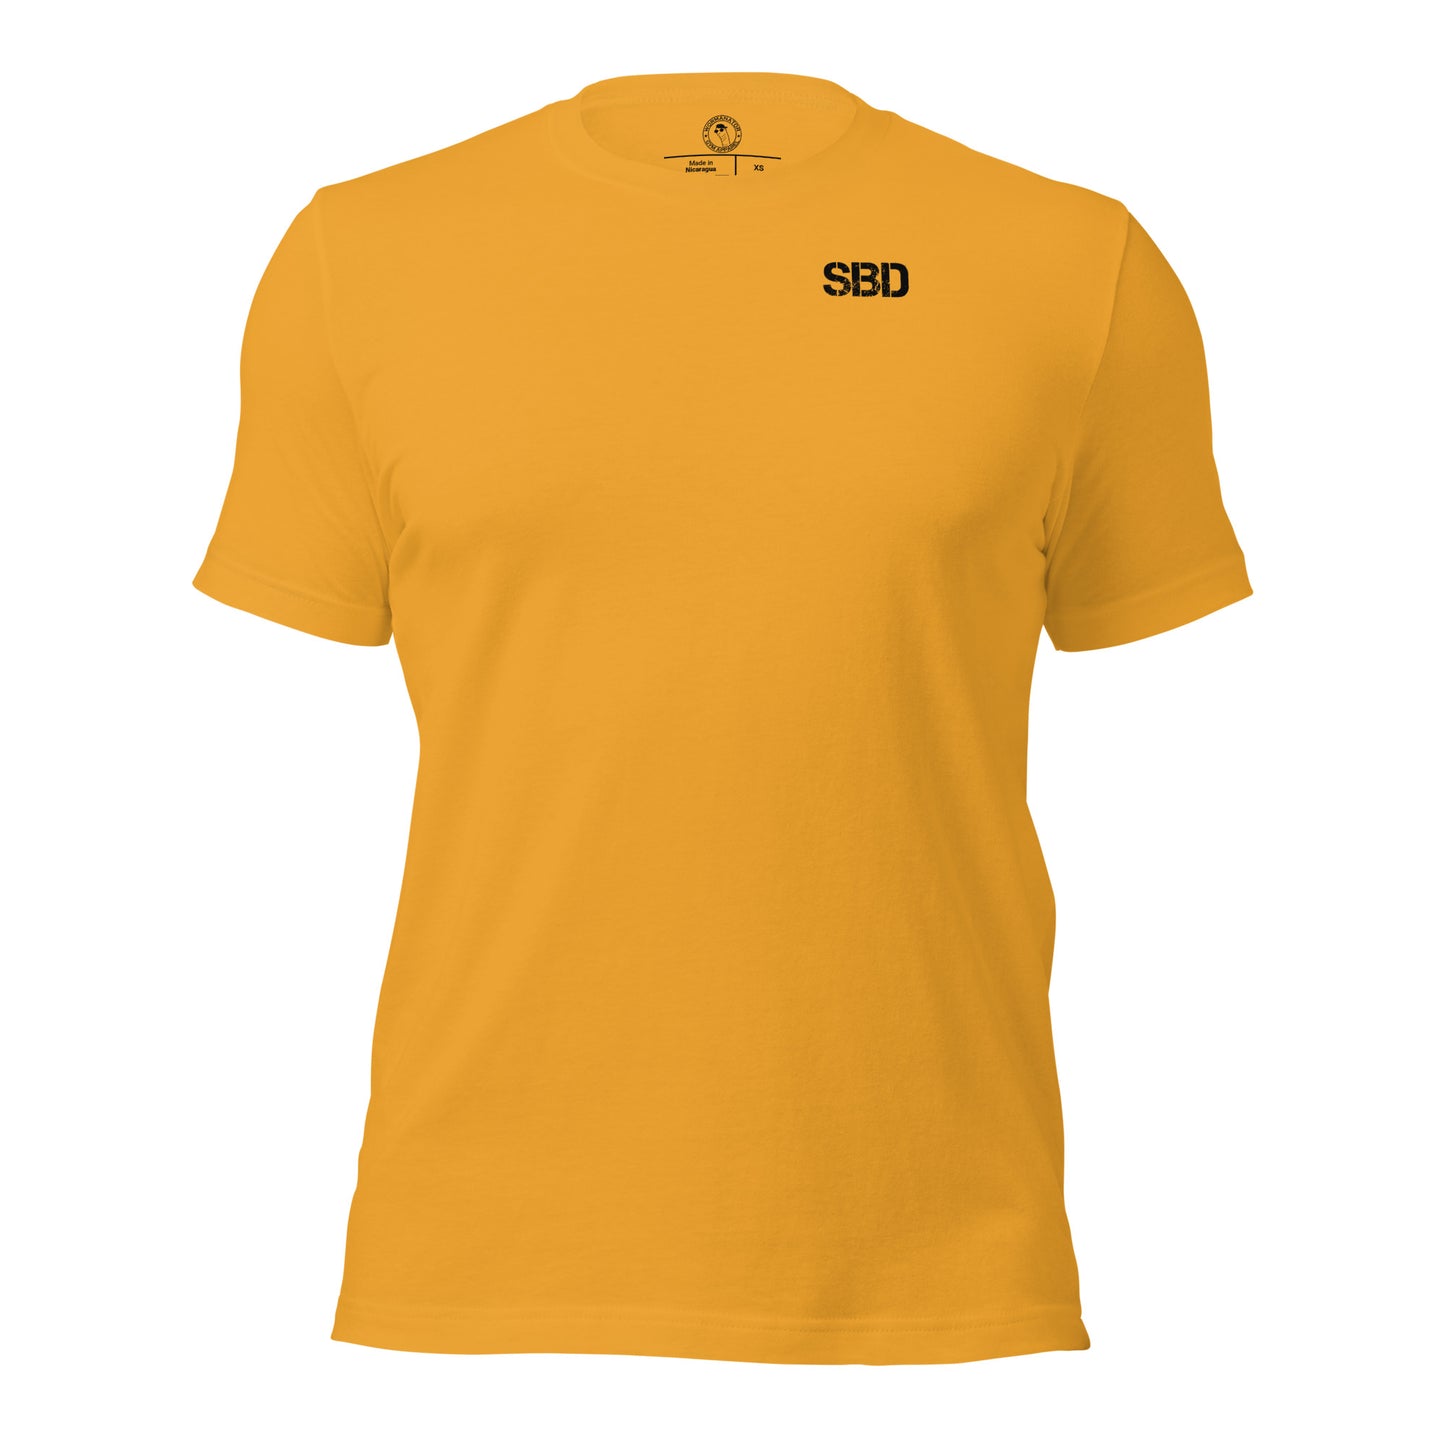 Squat Bench Deadlift (SBD) Shirt in Mustard